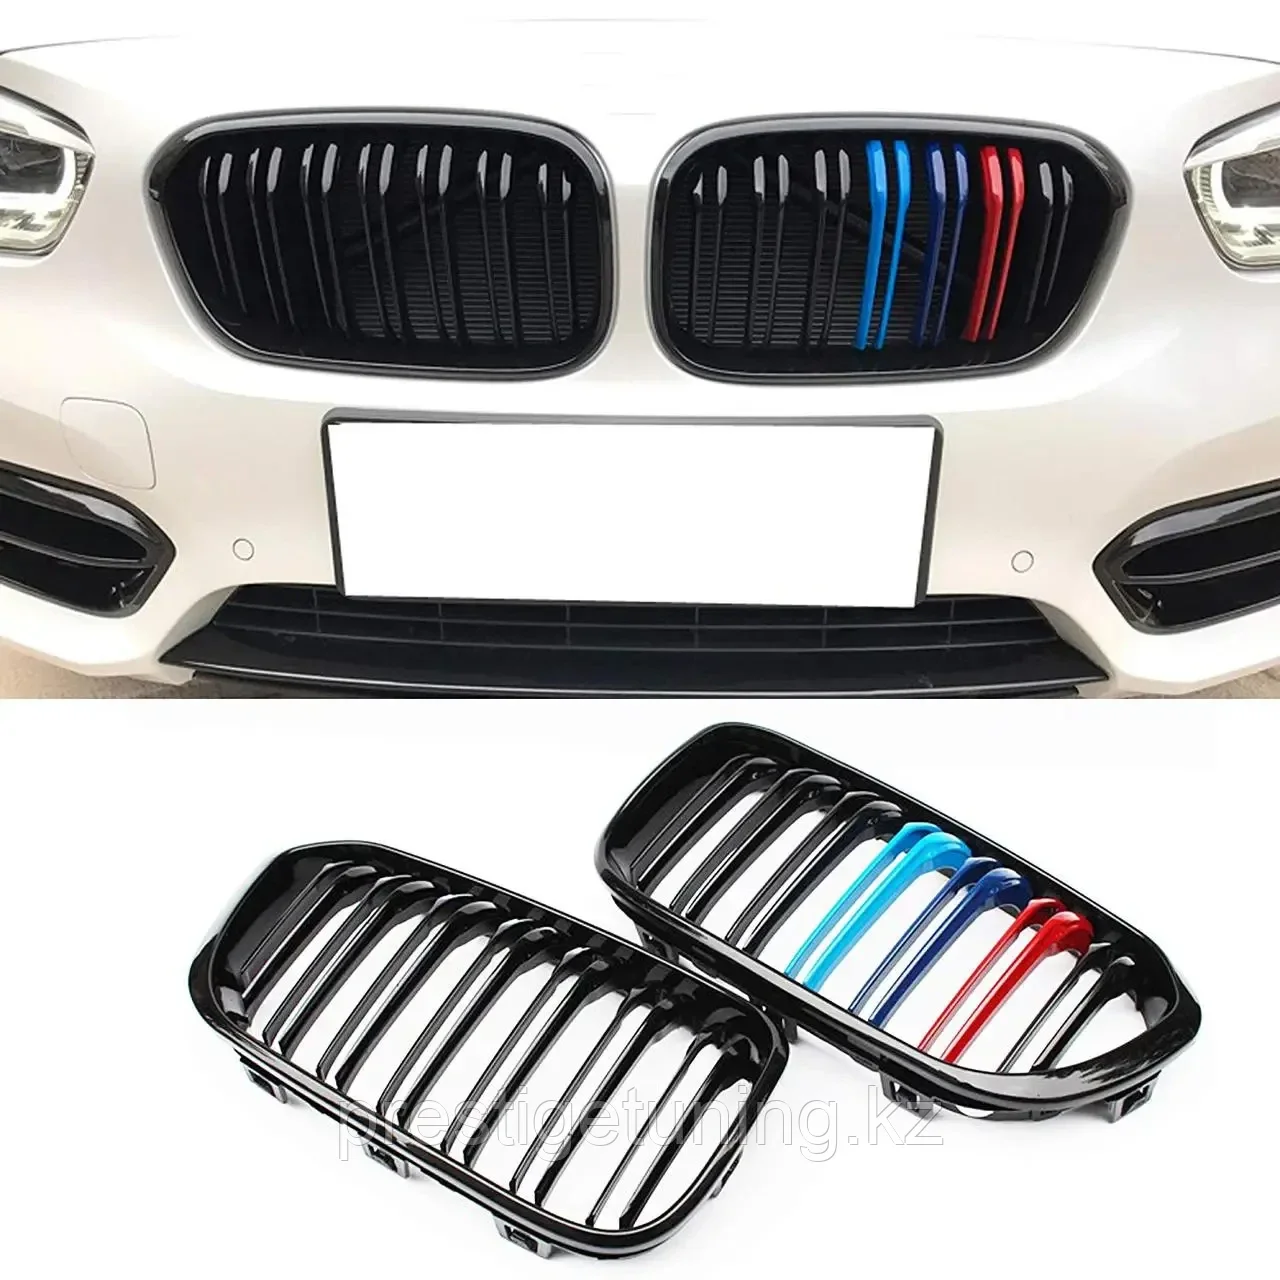 Решетка радиатора на BMW F20/F21 2015-17 ноздри в стиле M1 (Черный цвет + M Color)